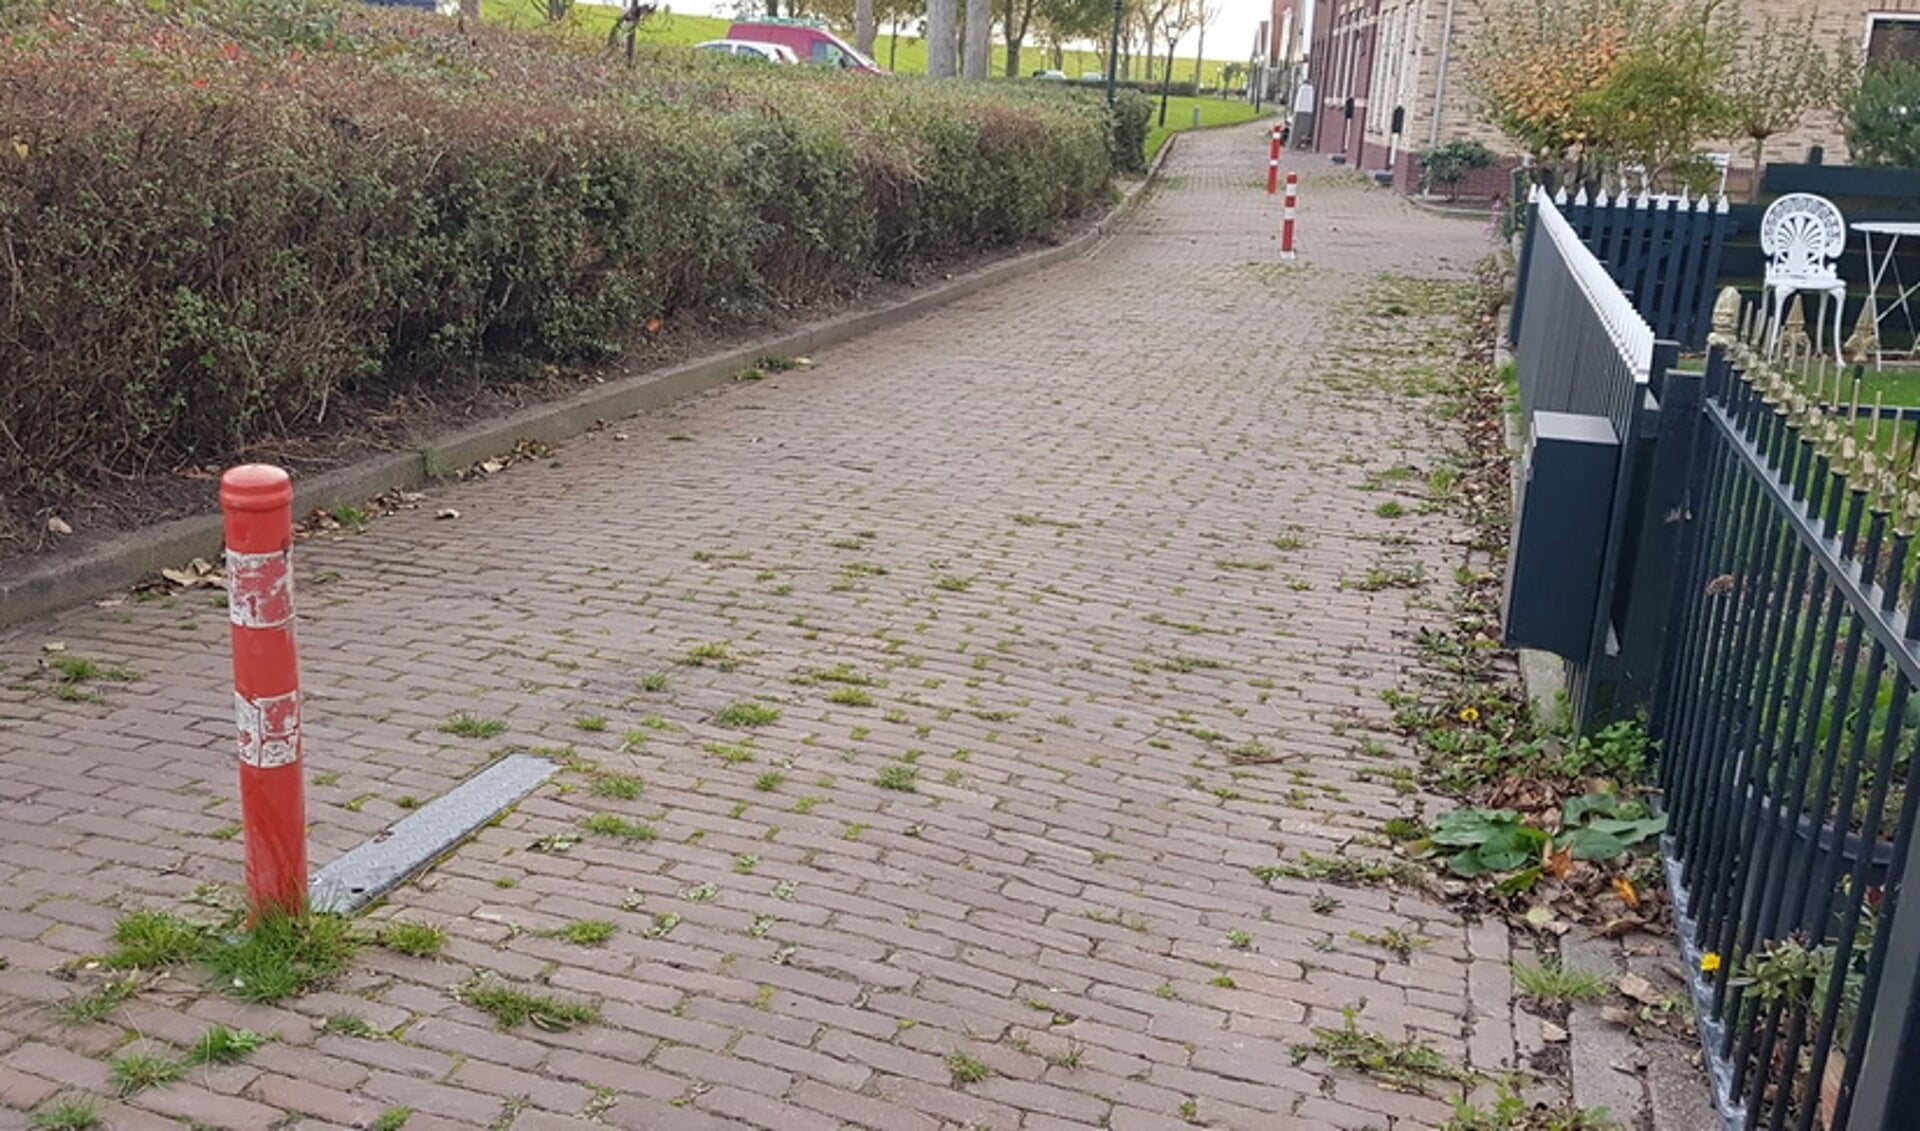 Fietsersbond Texel voert actie tegen paatjes op fietspaden zoals hier in de Ruyterstraat. 